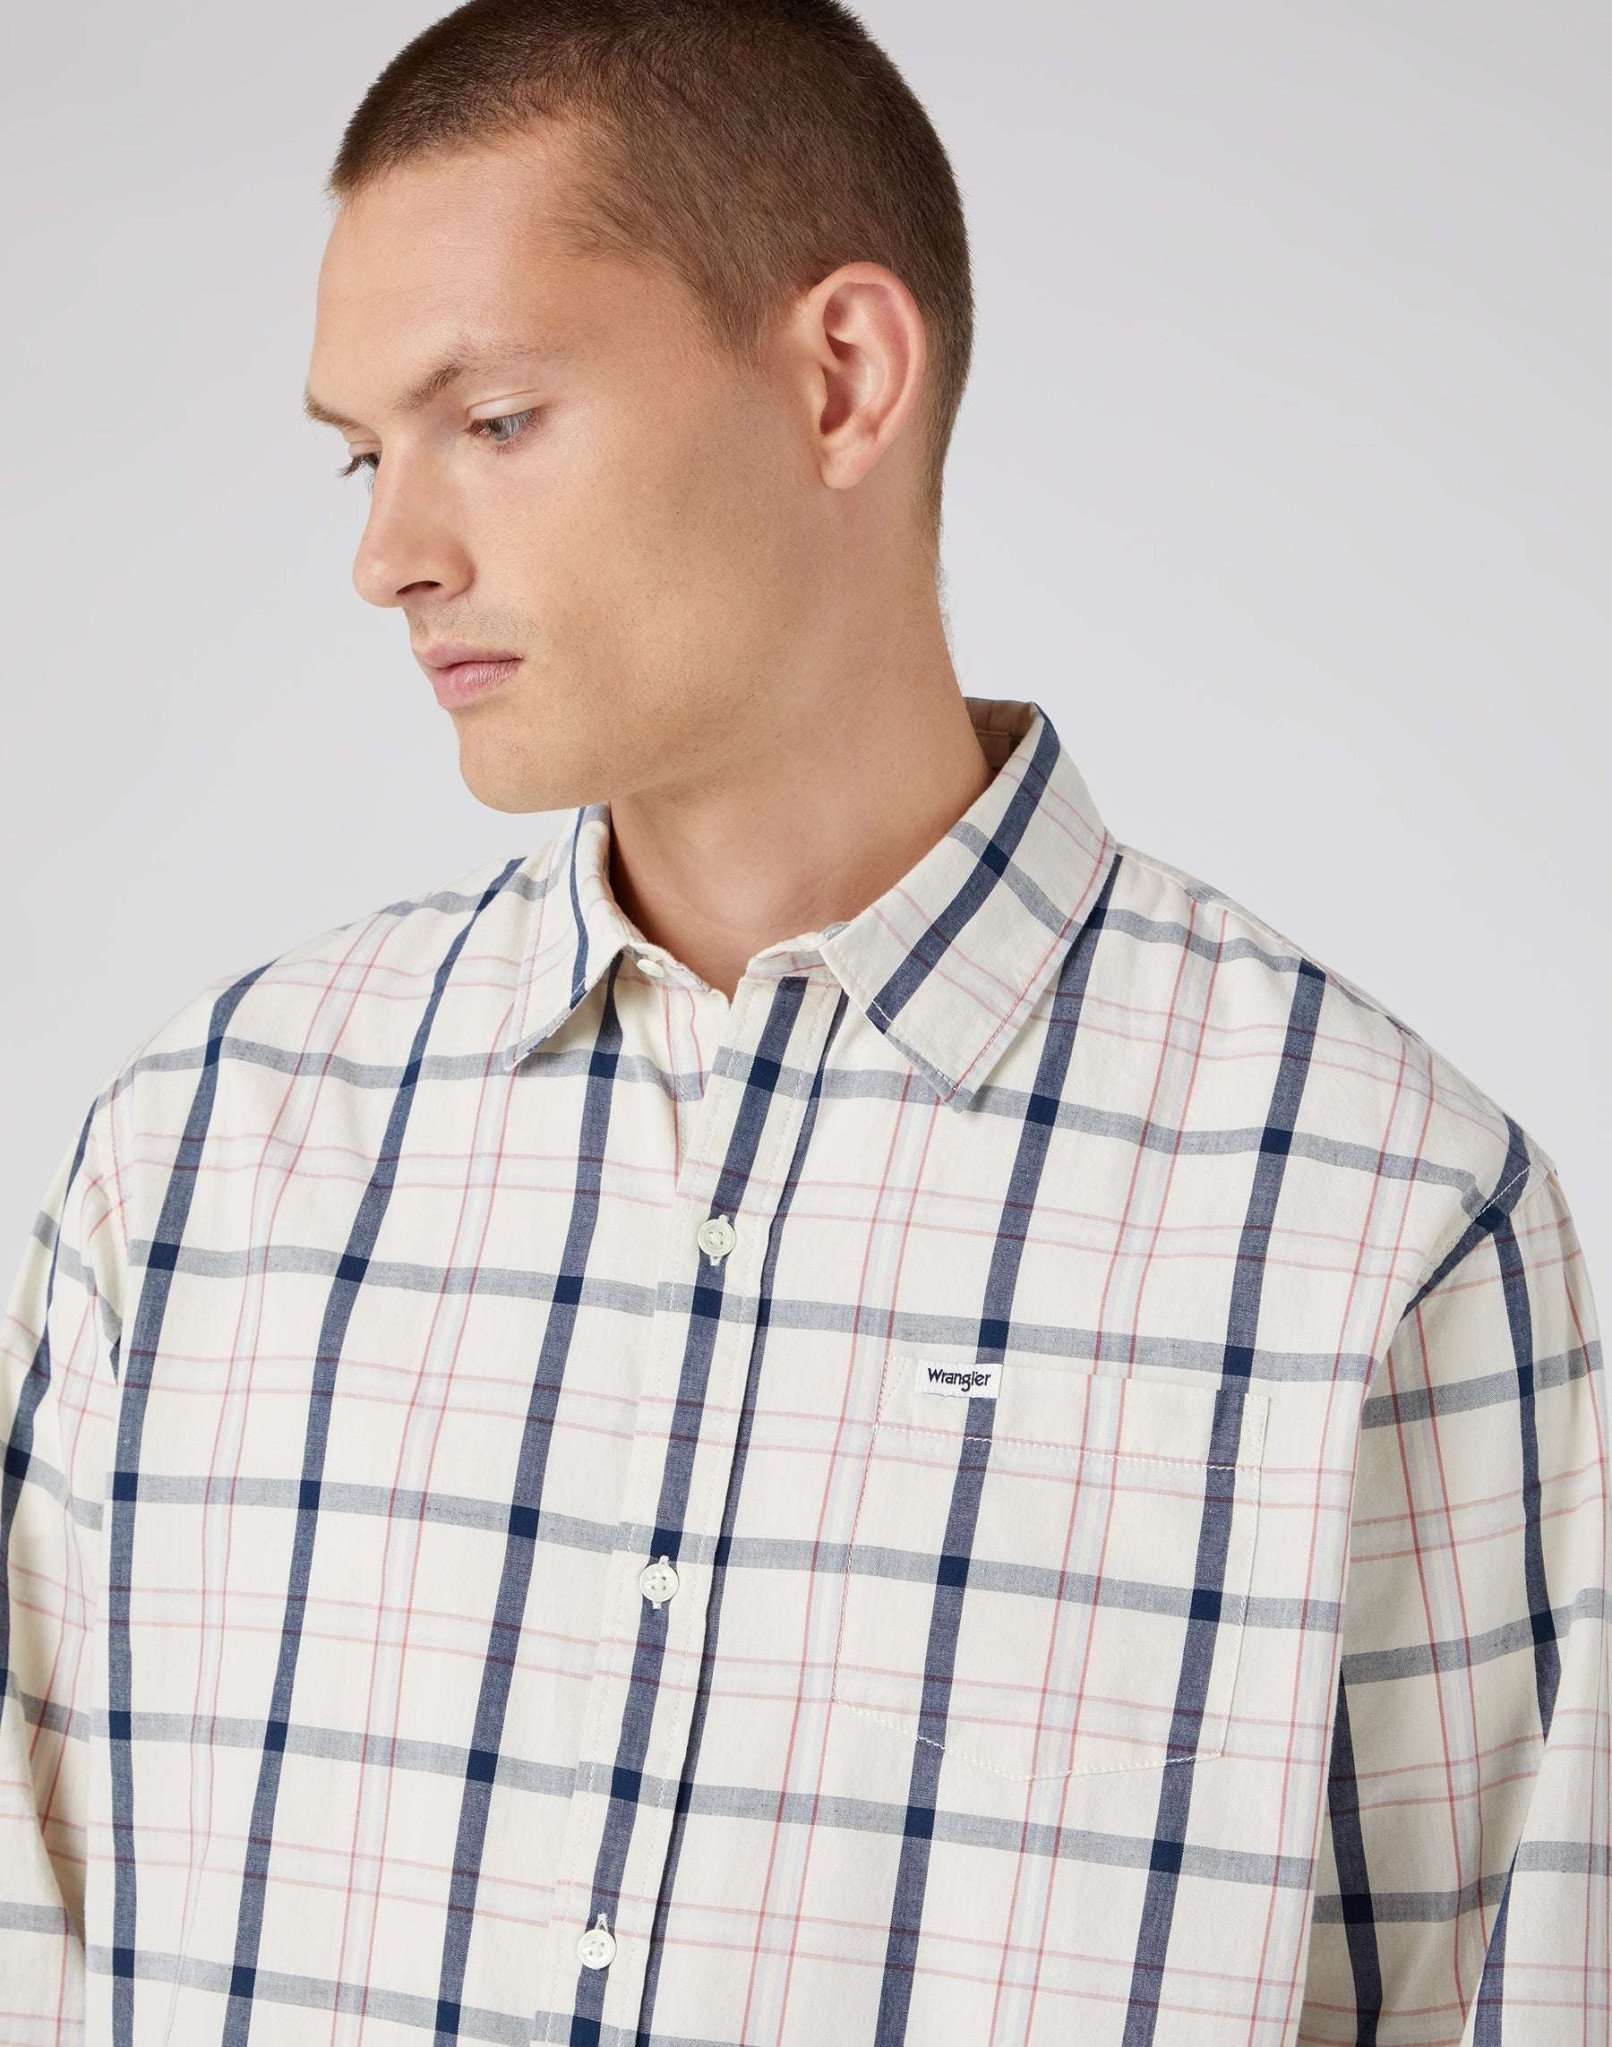 One Pocket Shirt in Turtledove Hemden Wrangler   